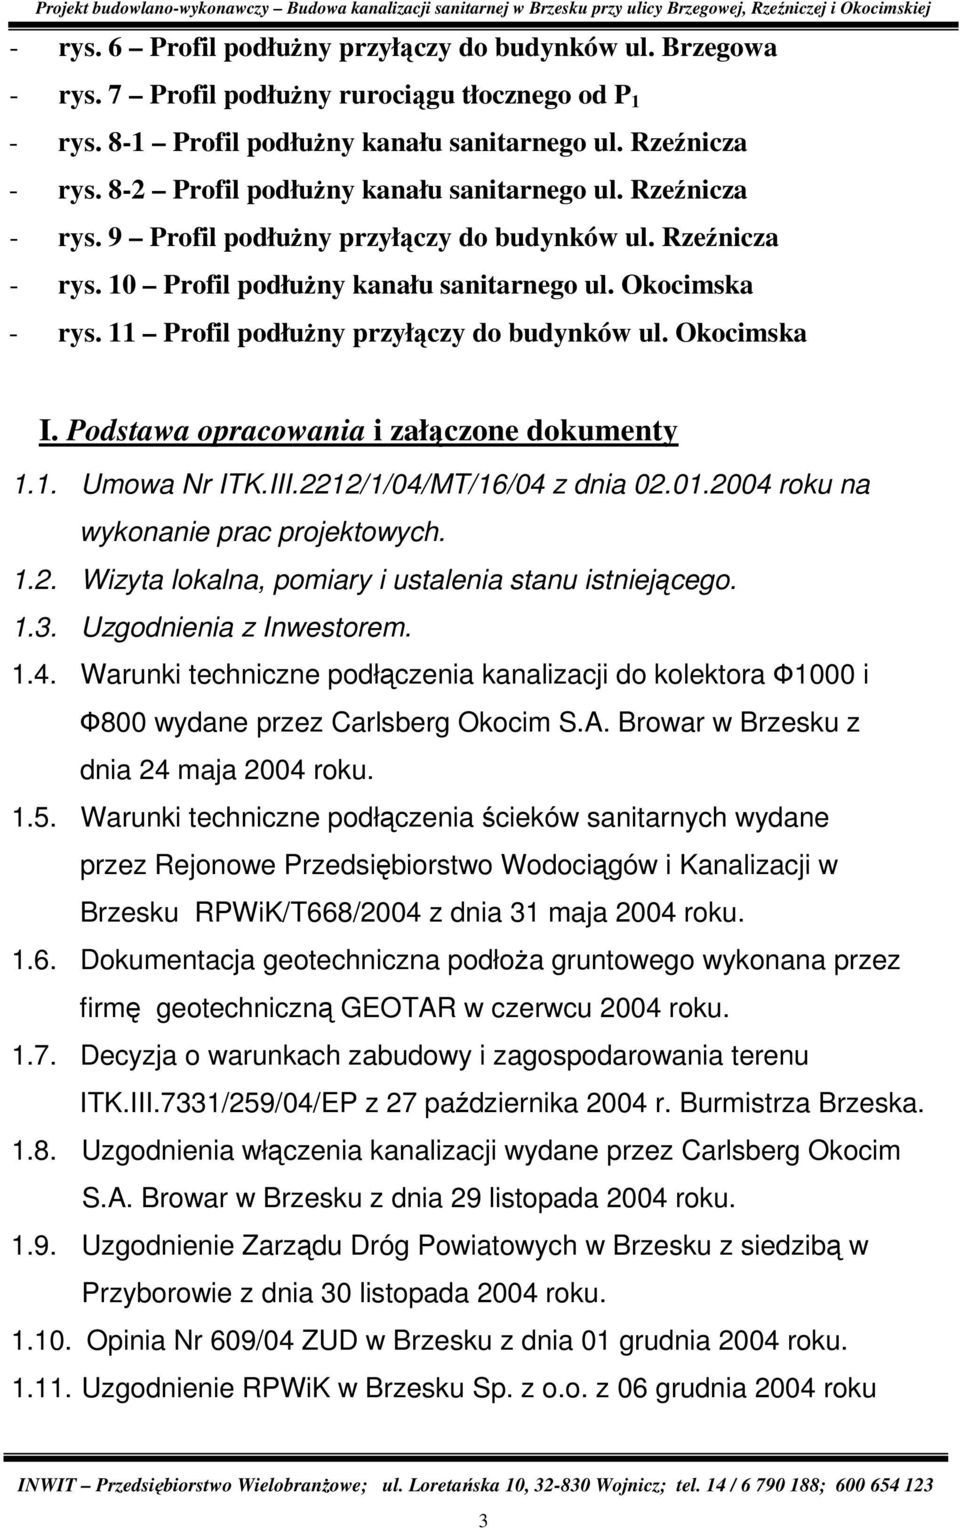 11 Profil podłuŝny przyłączy do budynków ul. Okocimska I. Podstawa opracowania i załączone dokumenty 1.1. Umowa Nr ITK.III.2212/1/04/MT/16/04 z dnia 02.01.2004 roku na wykonanie prac projektowych. 1.2. Wizyta lokalna, pomiary i ustalenia stanu istniejącego.